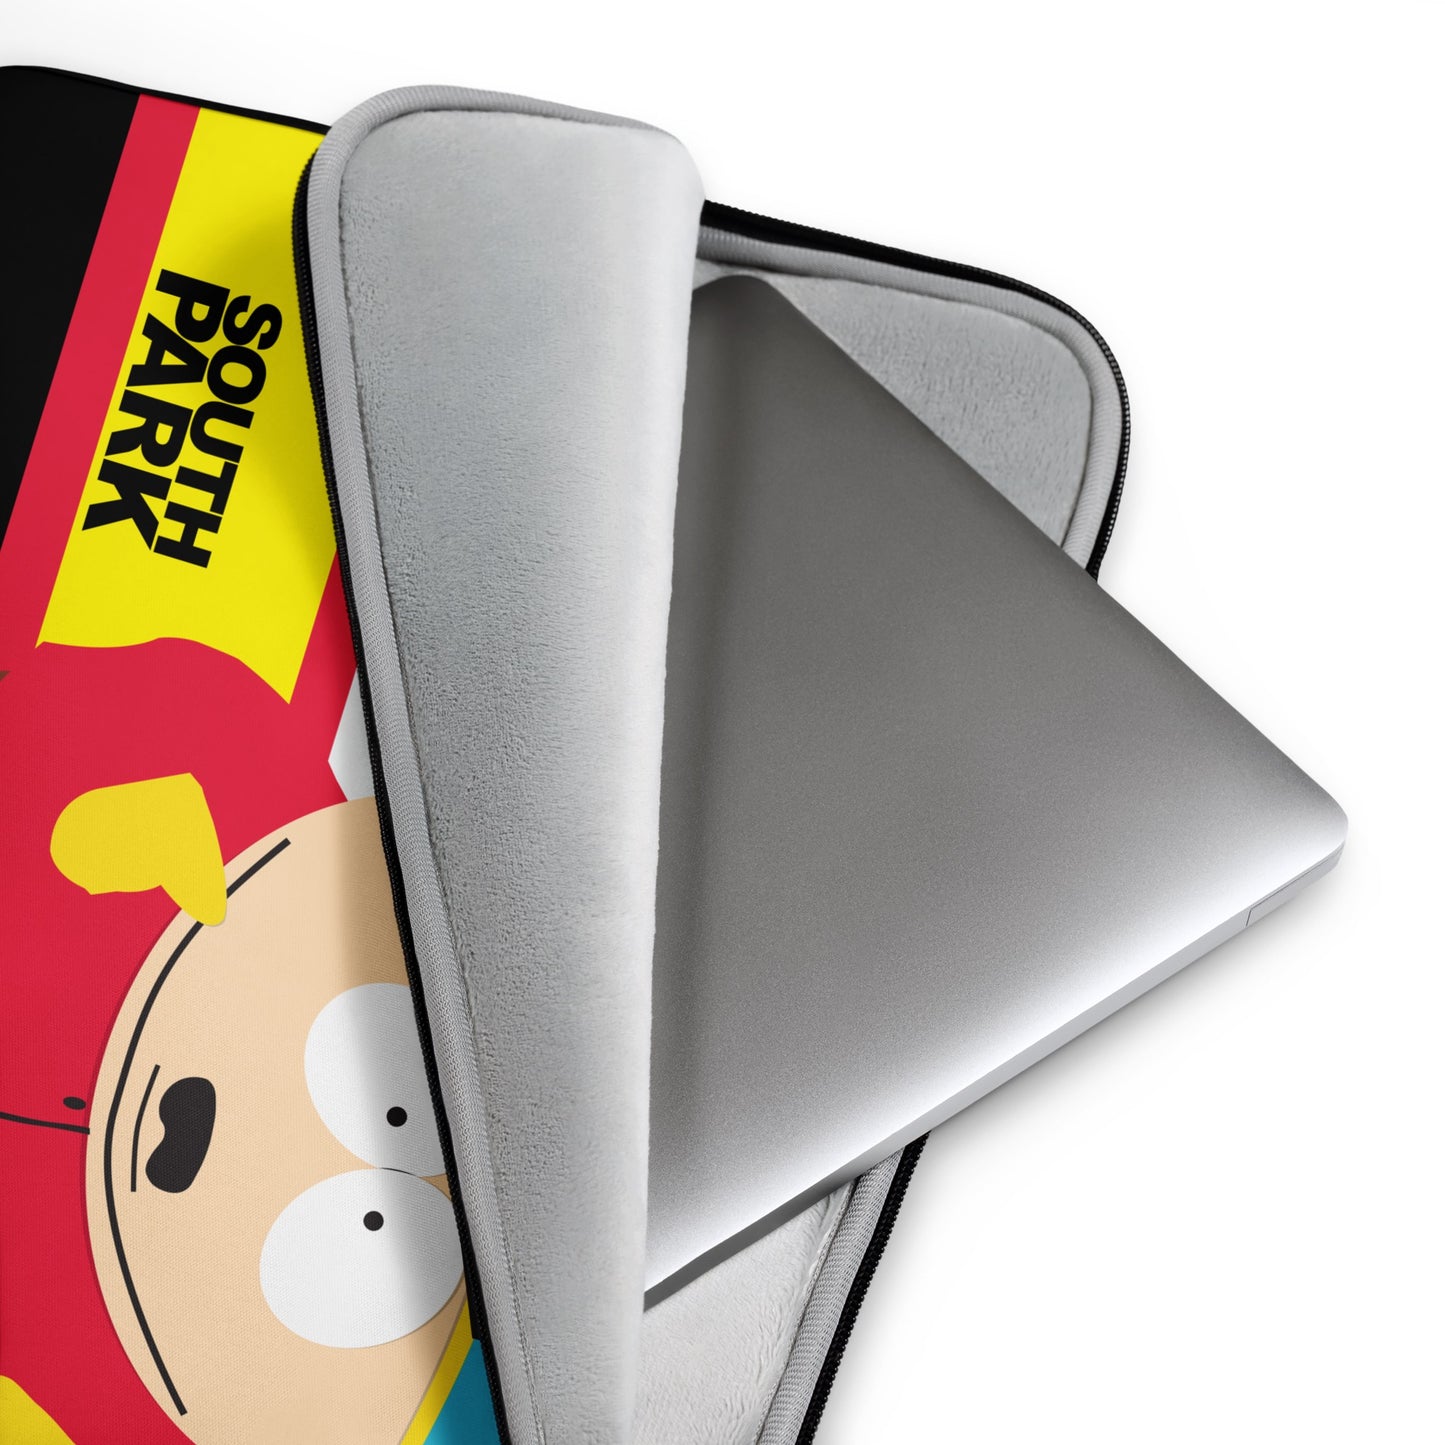 South Park Cartman Laptop Sleeve